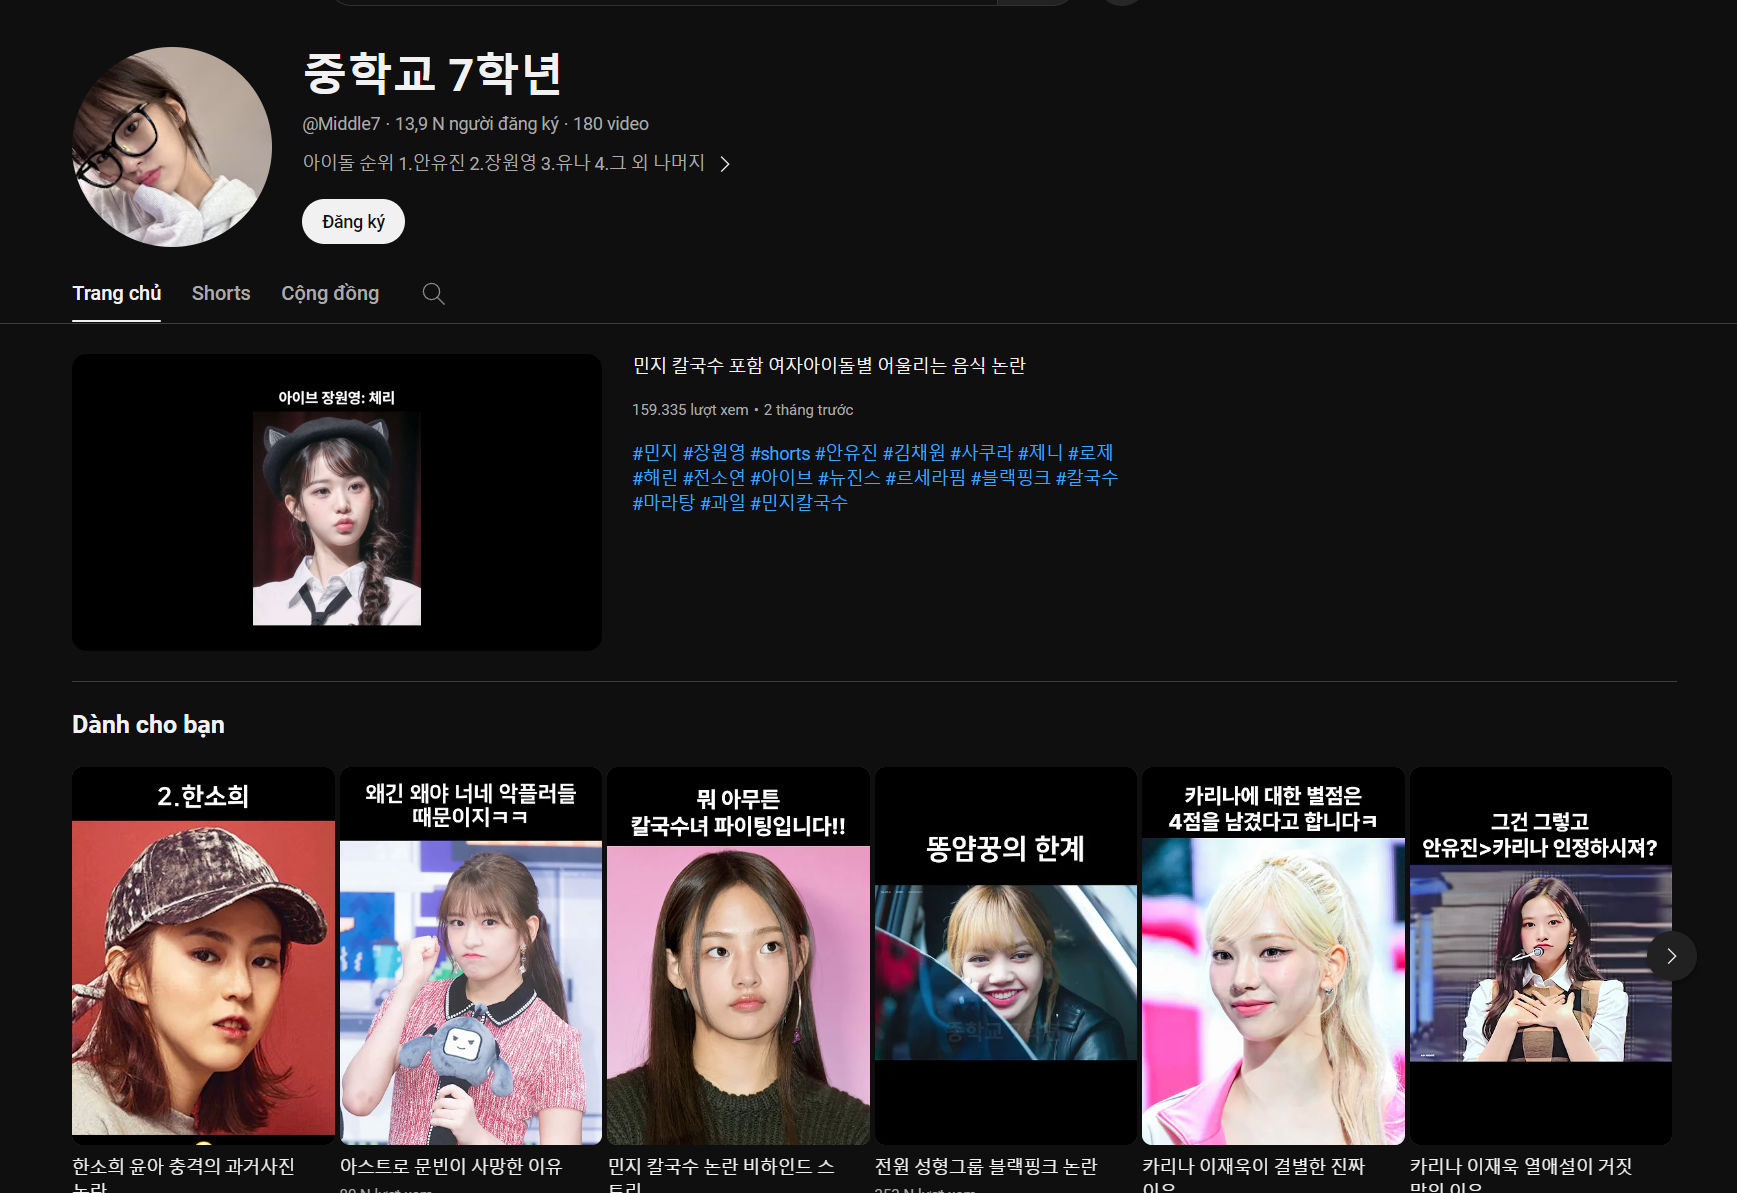 Nhóm K-Pop NewJeans yêu cầu Youtube công khai danh tính một YouTuber để họ kiện